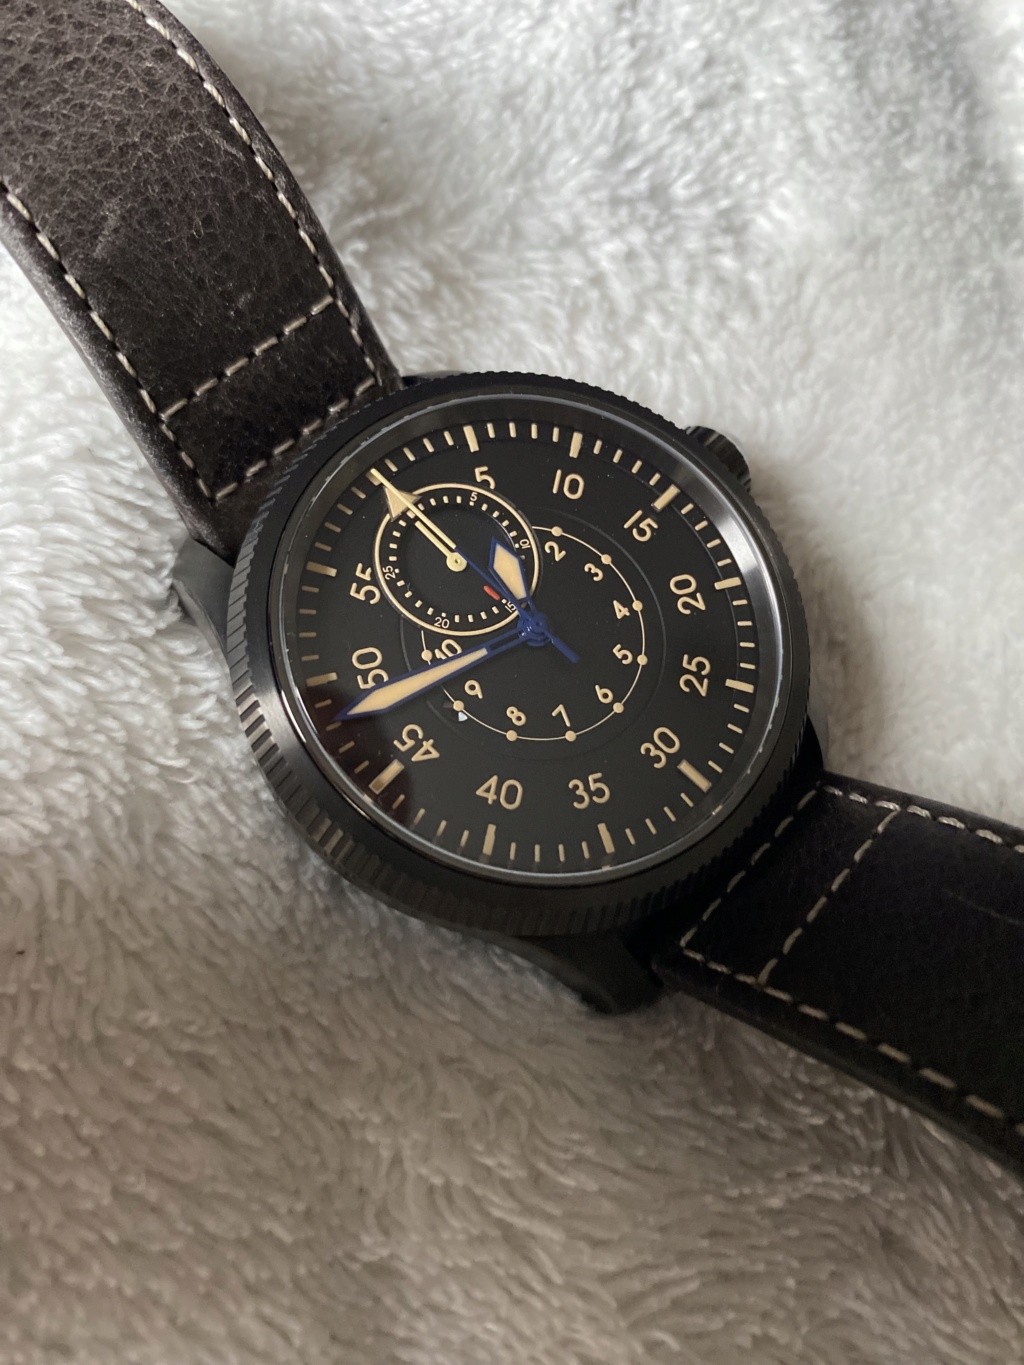 cosc - [Vends] Flieger Type B Watch Angels - Chrono Mono-poussoir COSC B-uhr-11